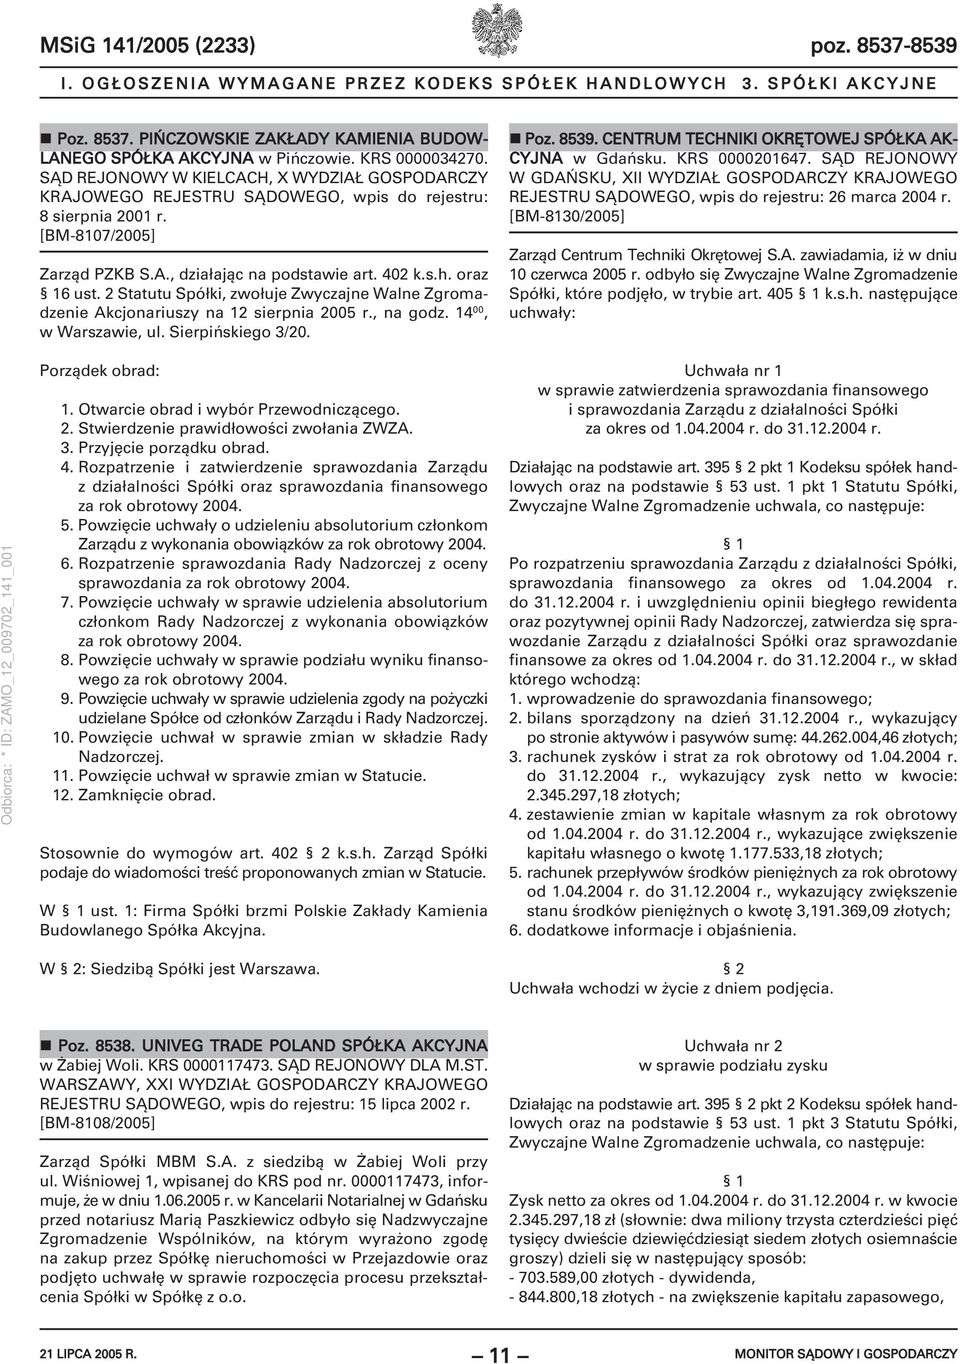 2 Statutu Spółki, zwołuje Zwyczajne Walne Zgromadzenie Akcjonariuszy na 12 sierpnia 2005 r., na godz. 14 00, w Warszawie, ul. Sierpińskiego 3/20. Poz. 8539.